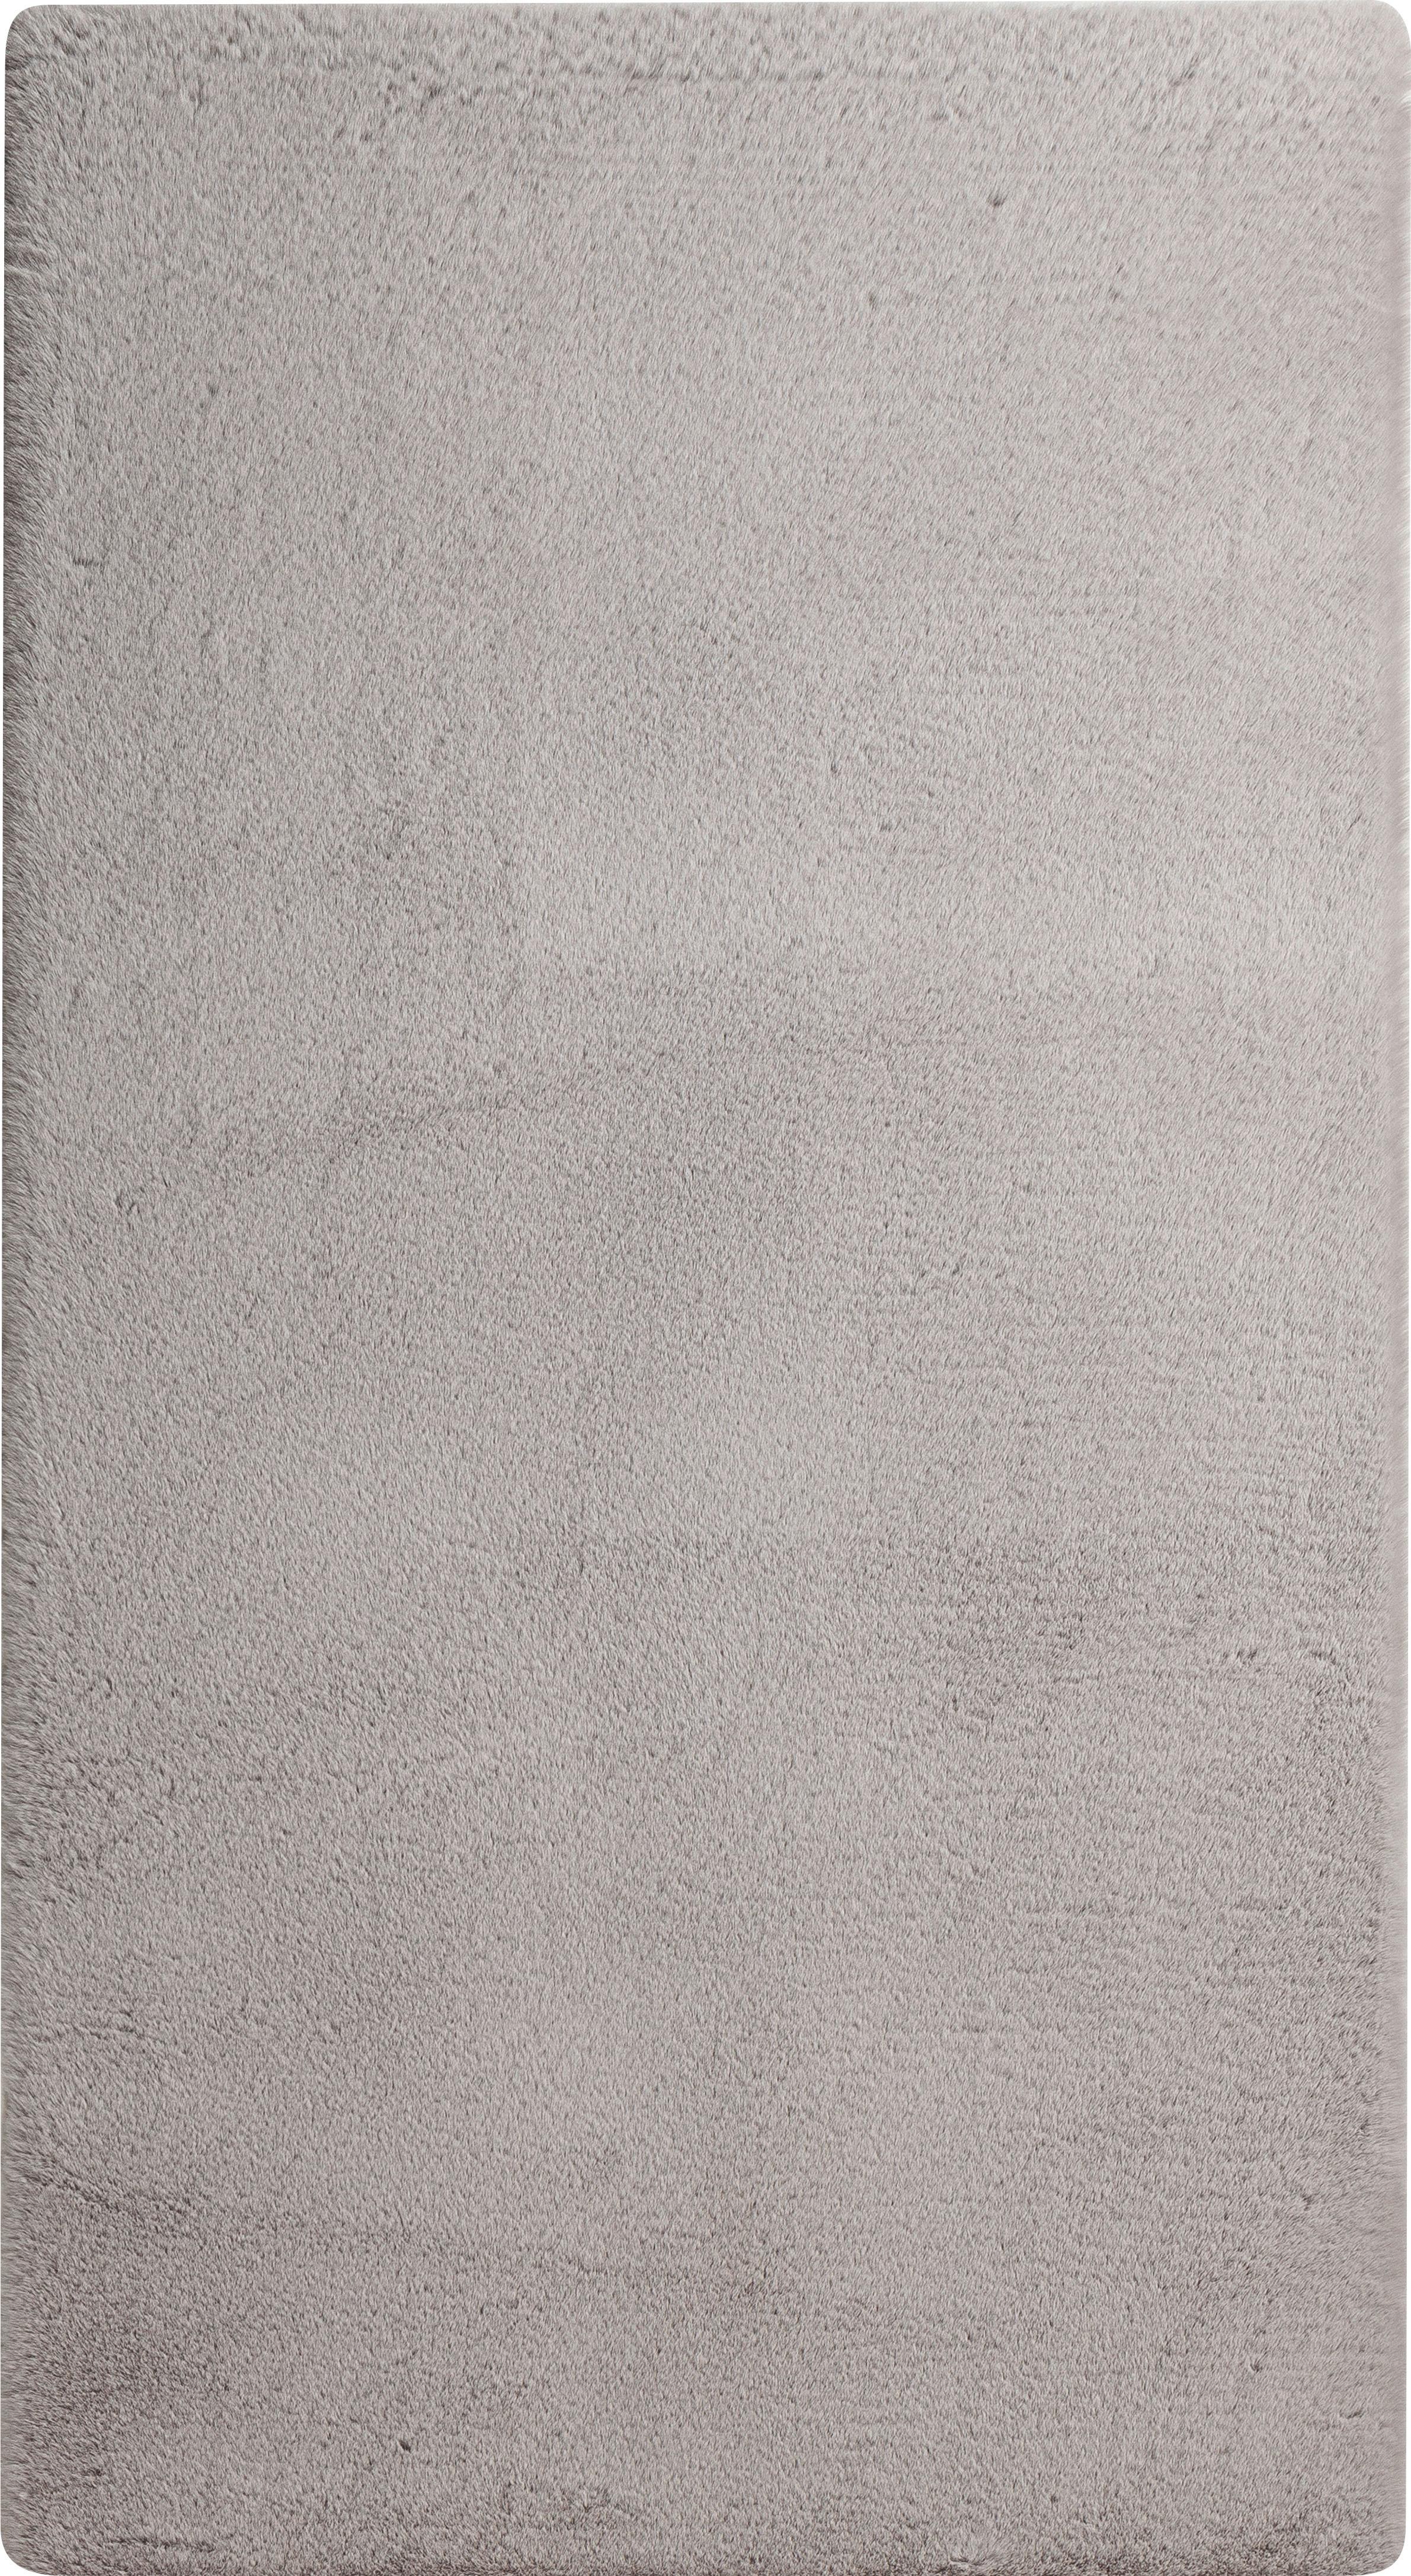 Fellteppich Magarete Silberfarben 80x150 cm - Silberfarben, Textil (80/150cm) - Luca Bessoni